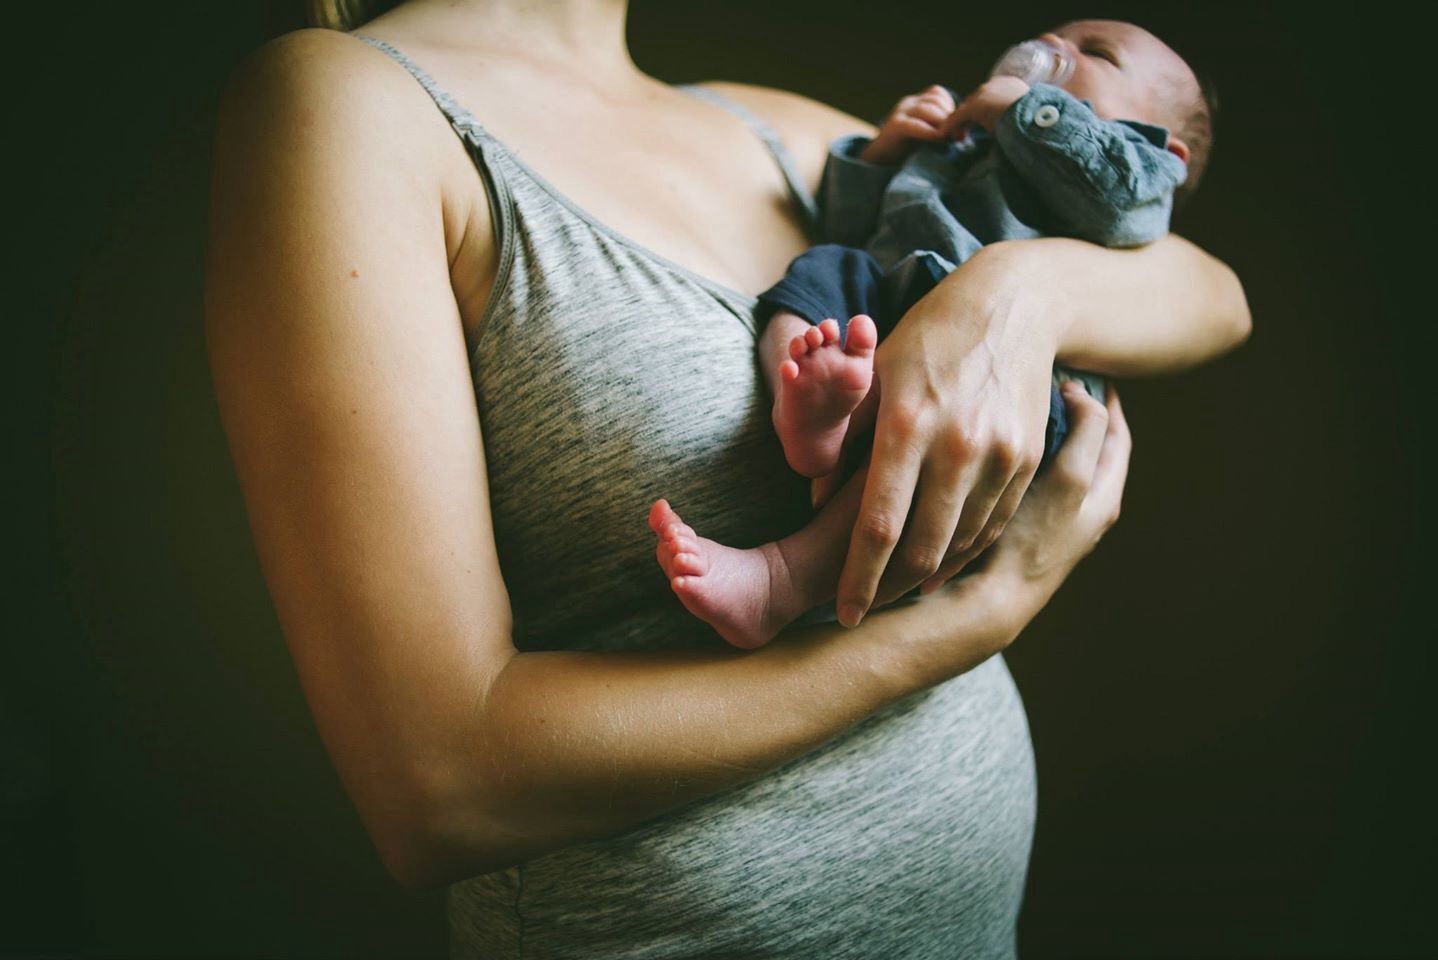 Postpartum body: new mom holding baby